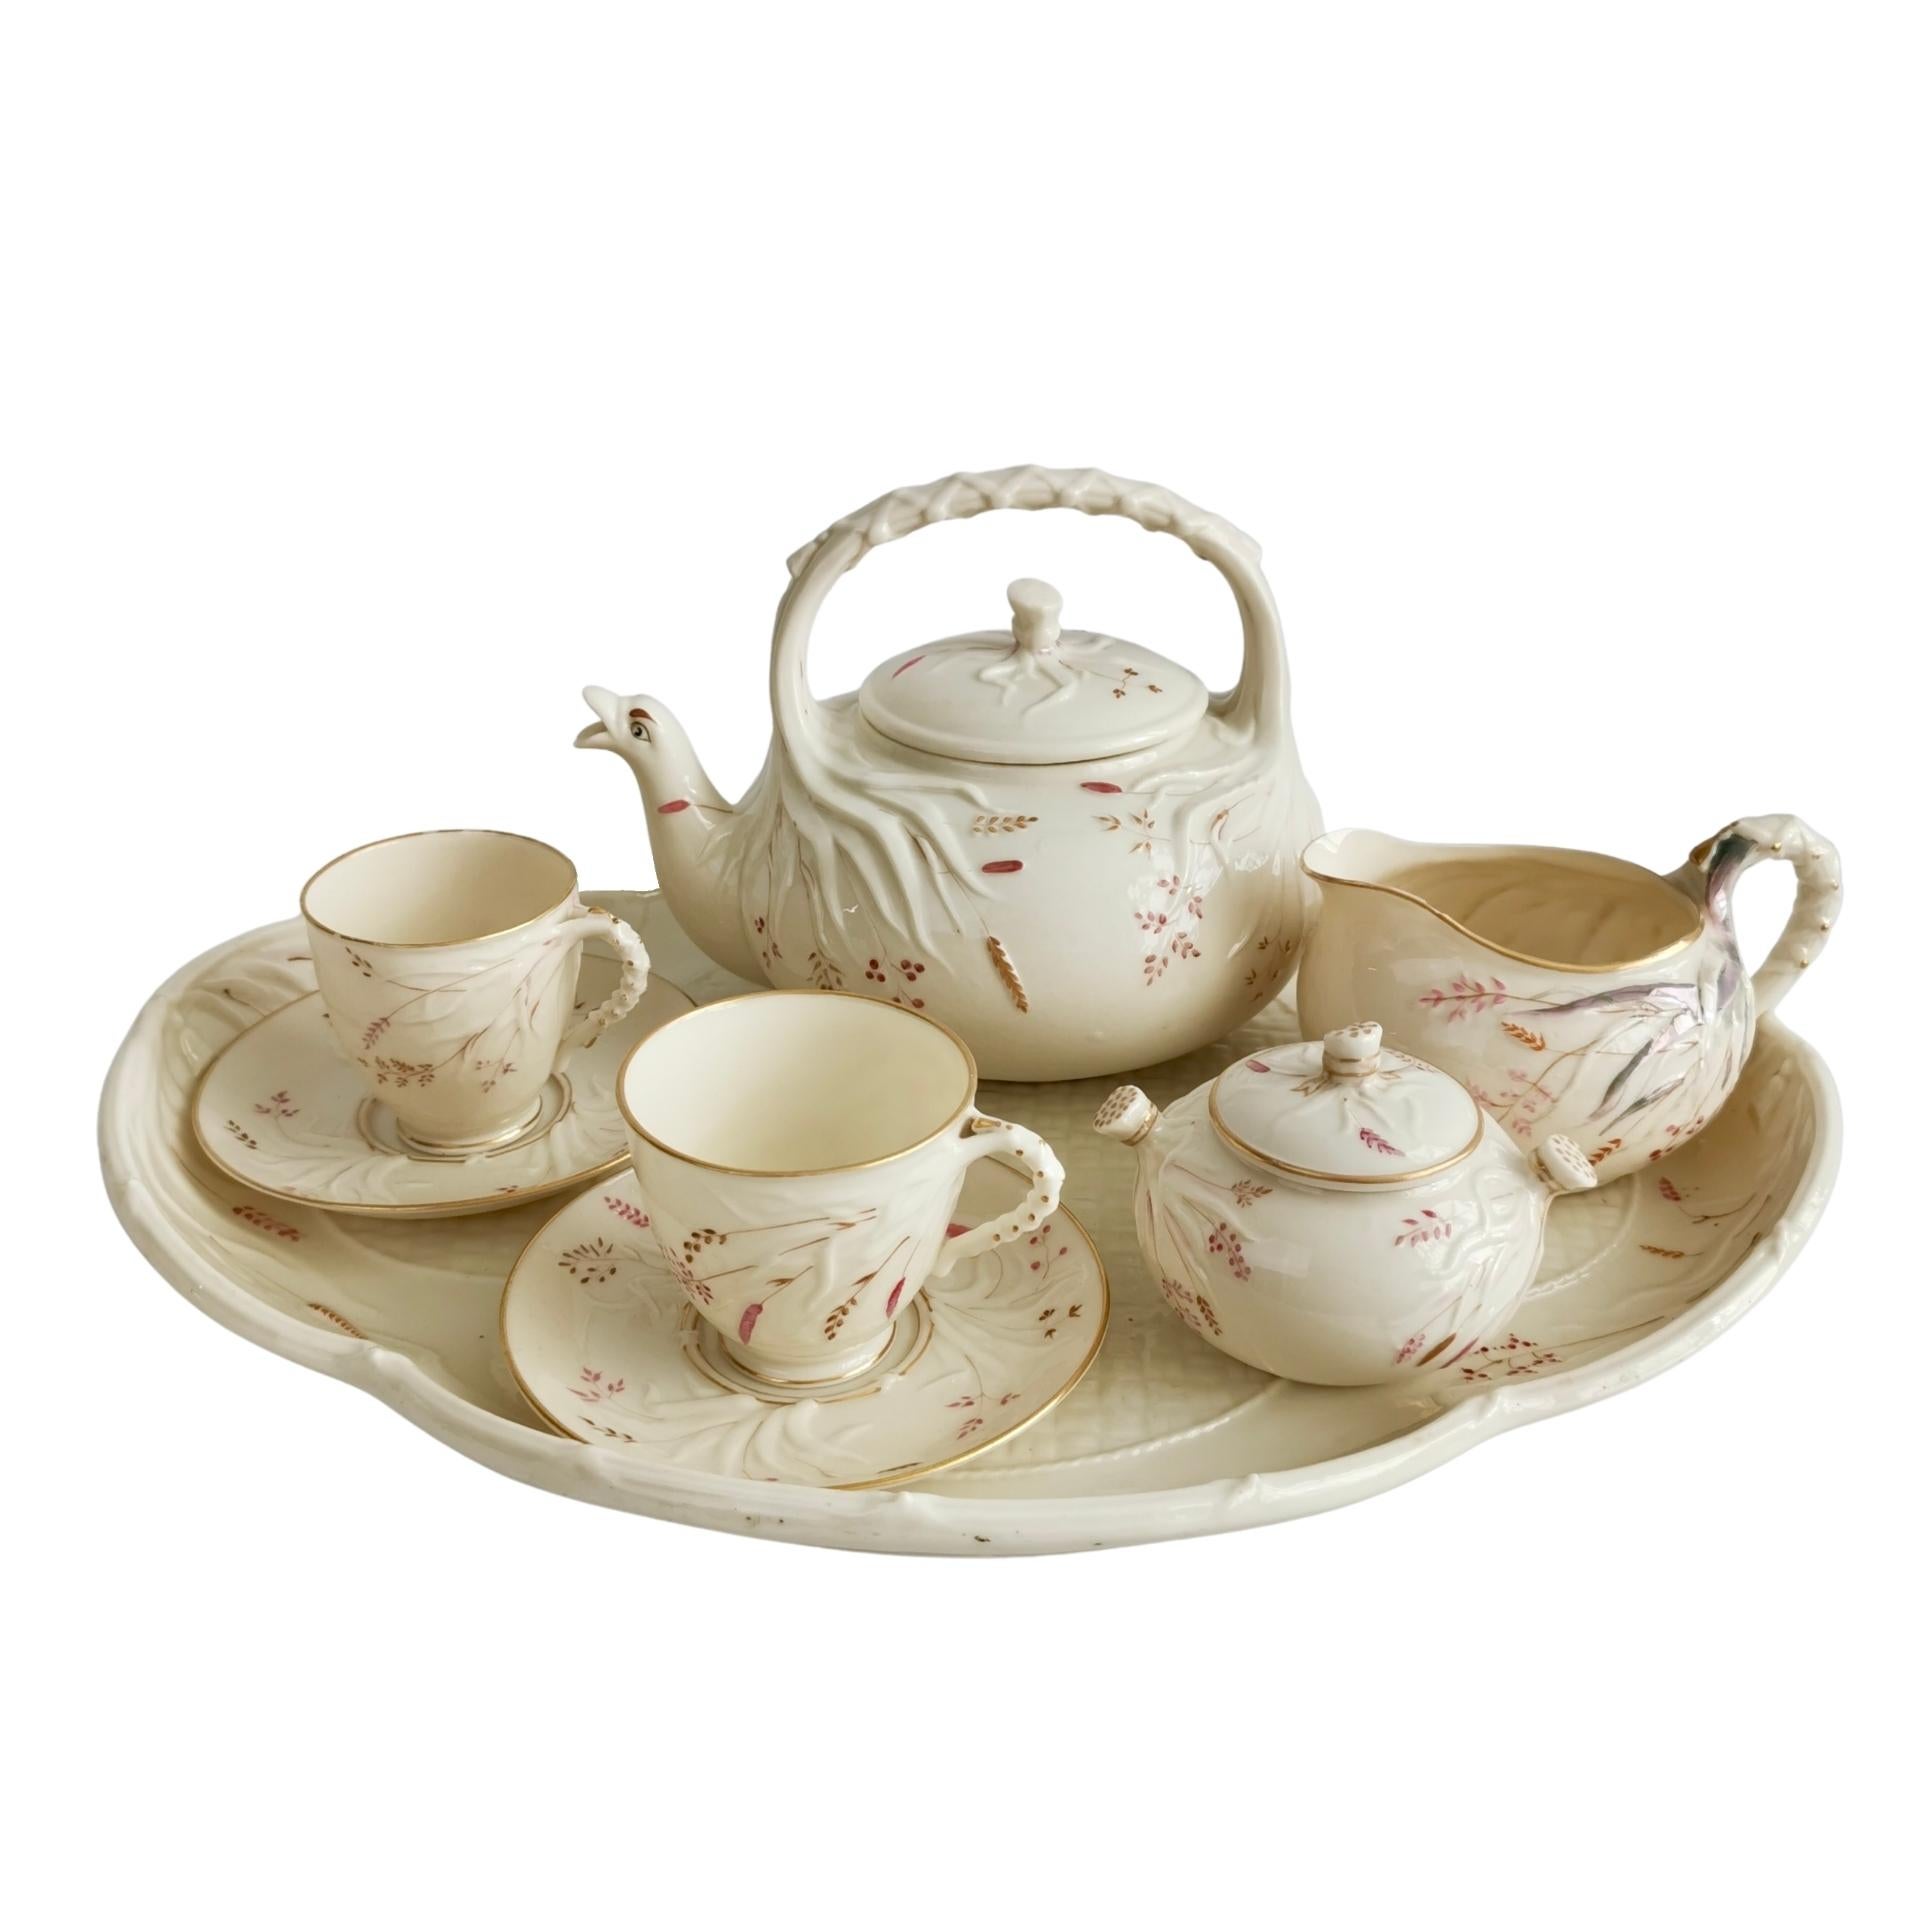 Belleek Cabaret Tea Set for Two, Cream Grass Pattern, Victorian 1863-1891